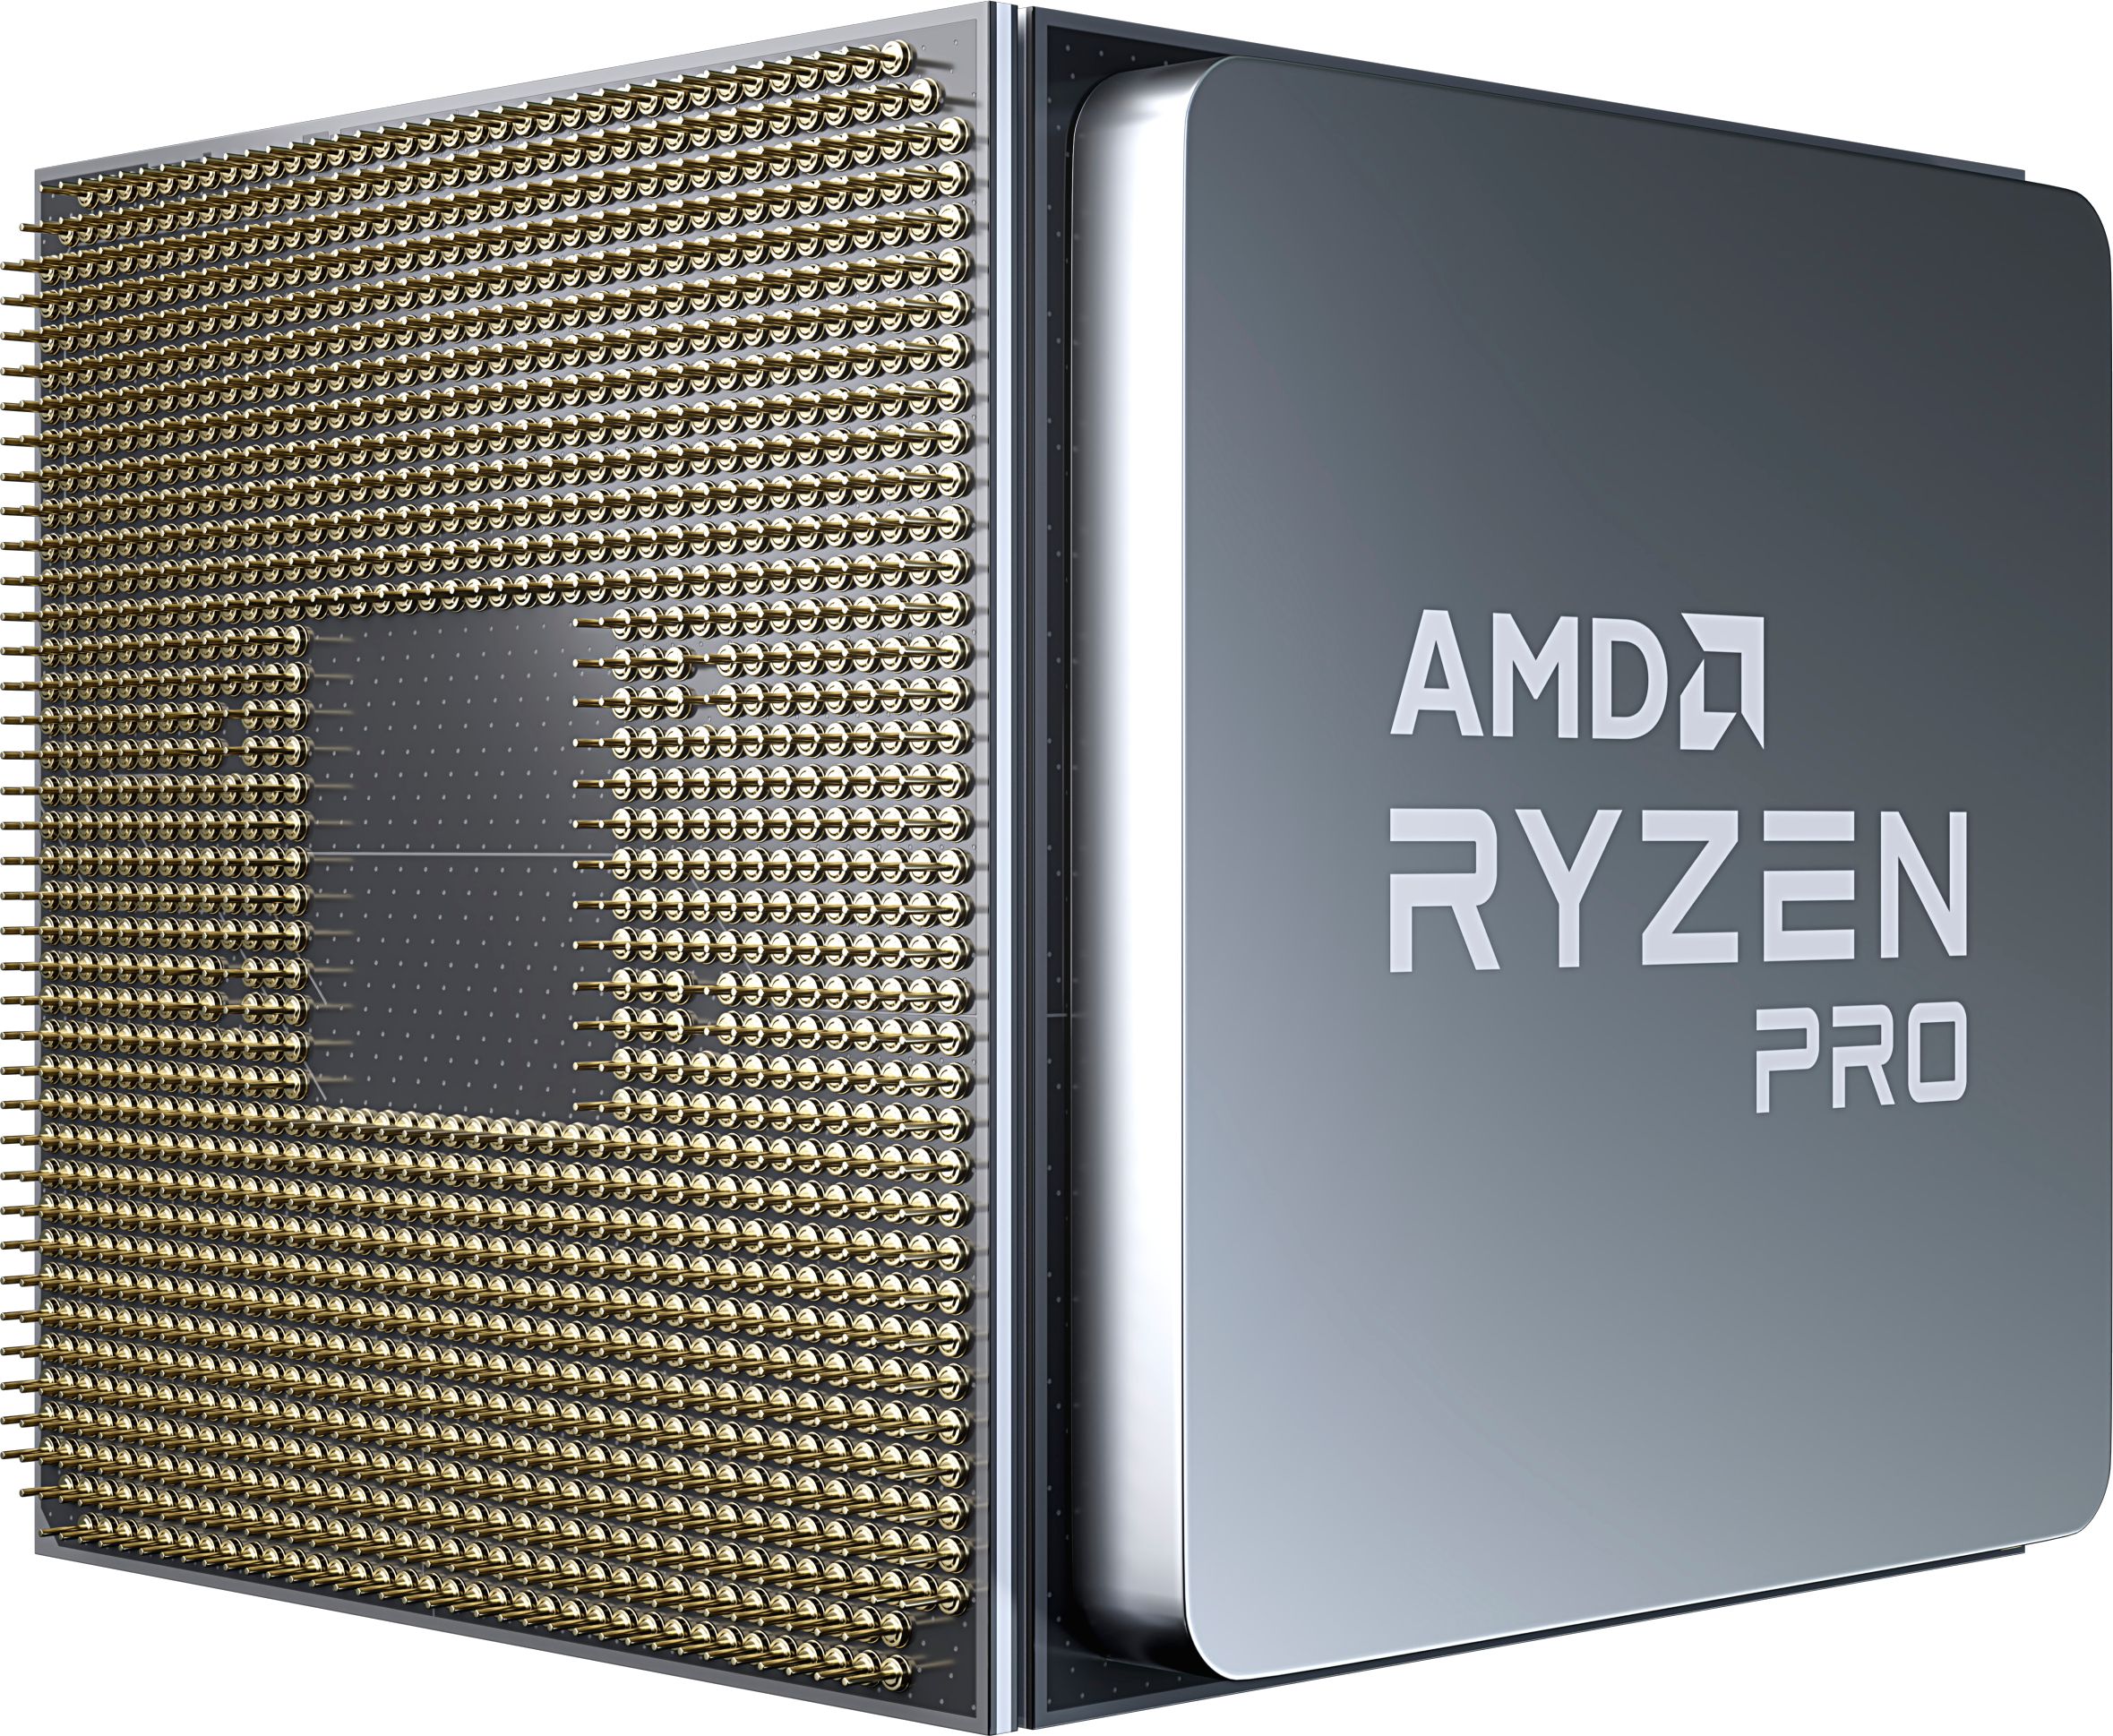 Ryzen 4000 Series Desktop Processors with Radeon